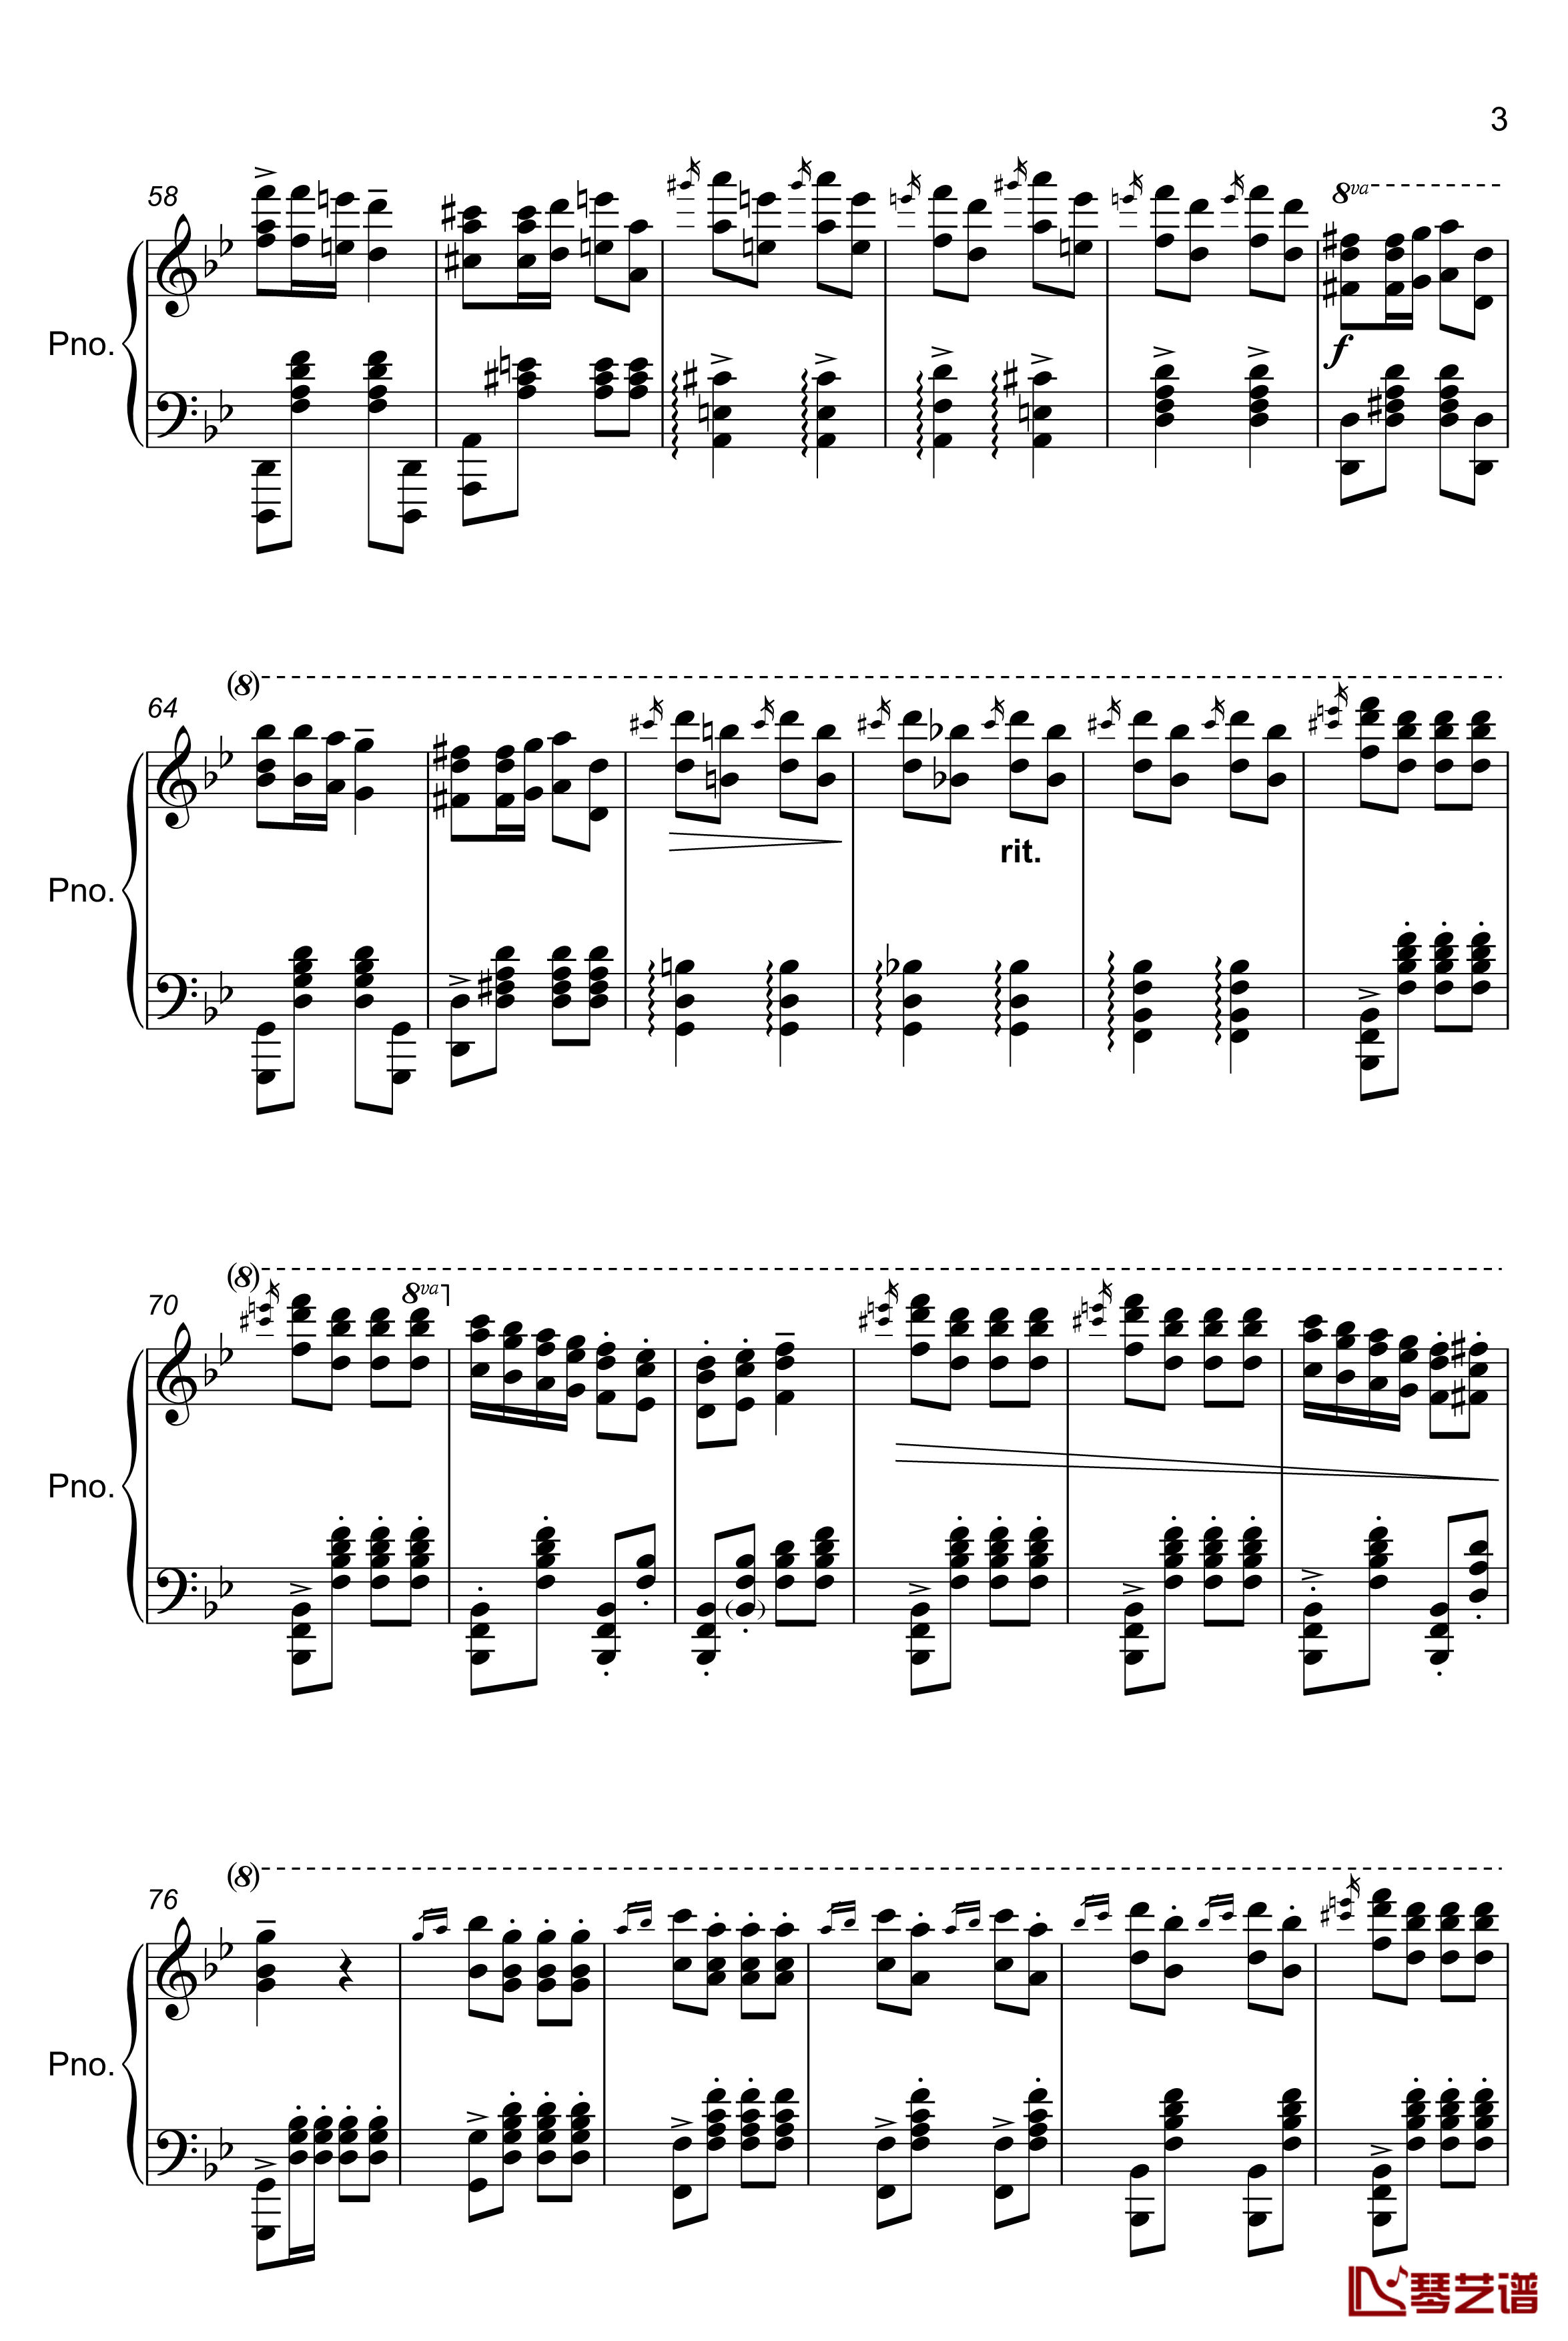 TUEKISH MARCH钢琴谱-kissin3